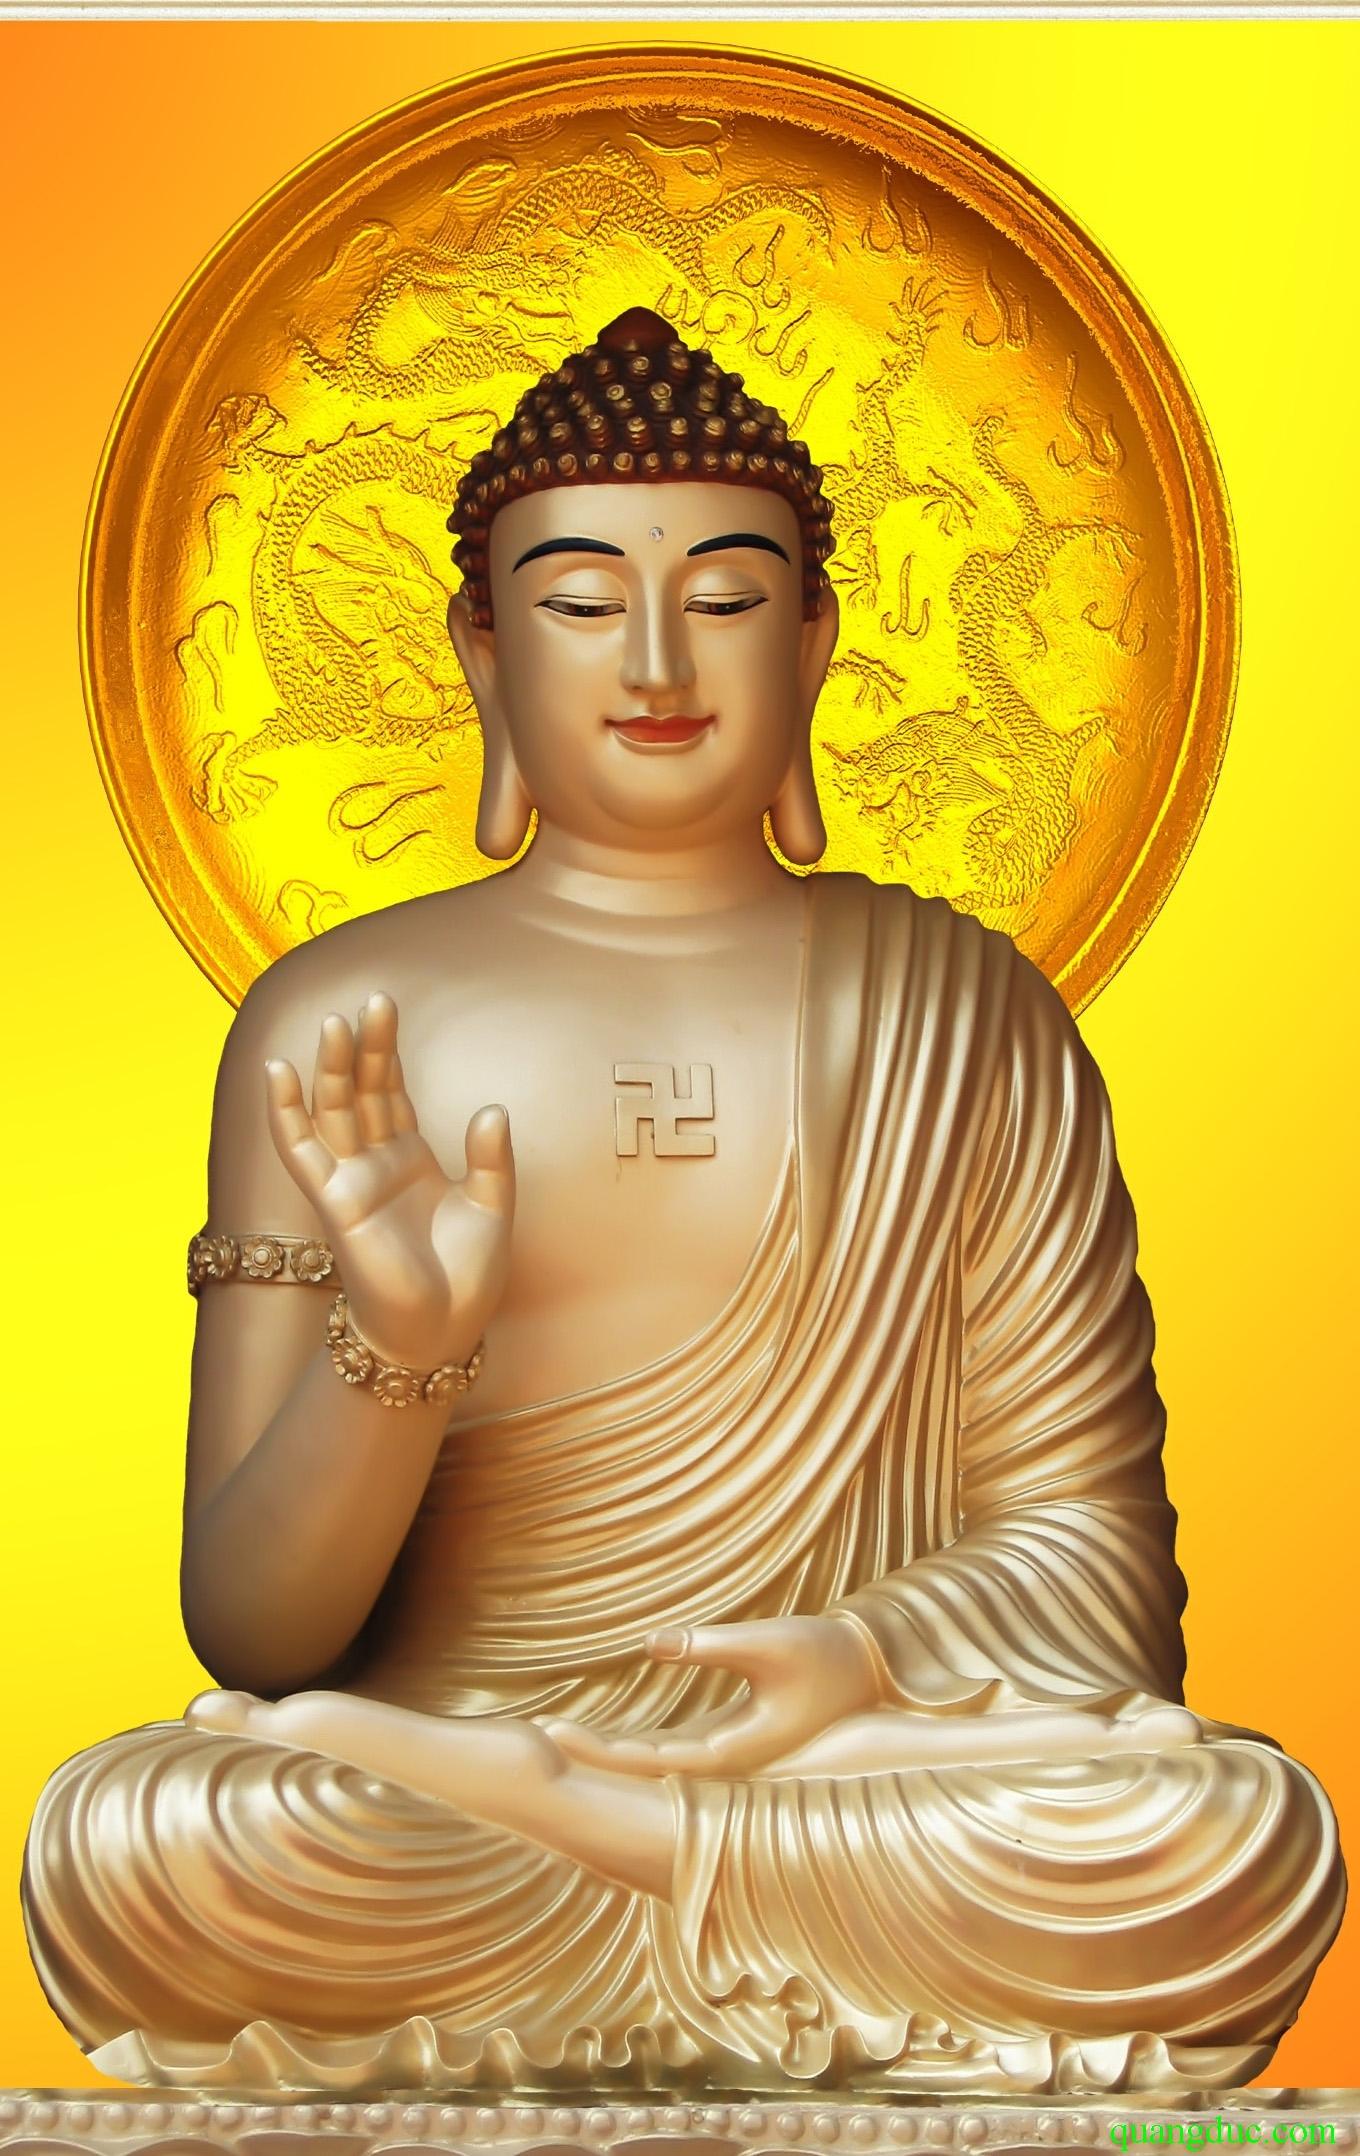 Giáo dục Phật giáo là con đường đưa chúng ta đến sự bình an và hạnh phúc trong cuộc sống. Hình ảnh liên quan đến giáo dục Phật giáo sẽ đem đến cho bạn những giá trị đích thực và sự tinh tấn trong tâm hồn.